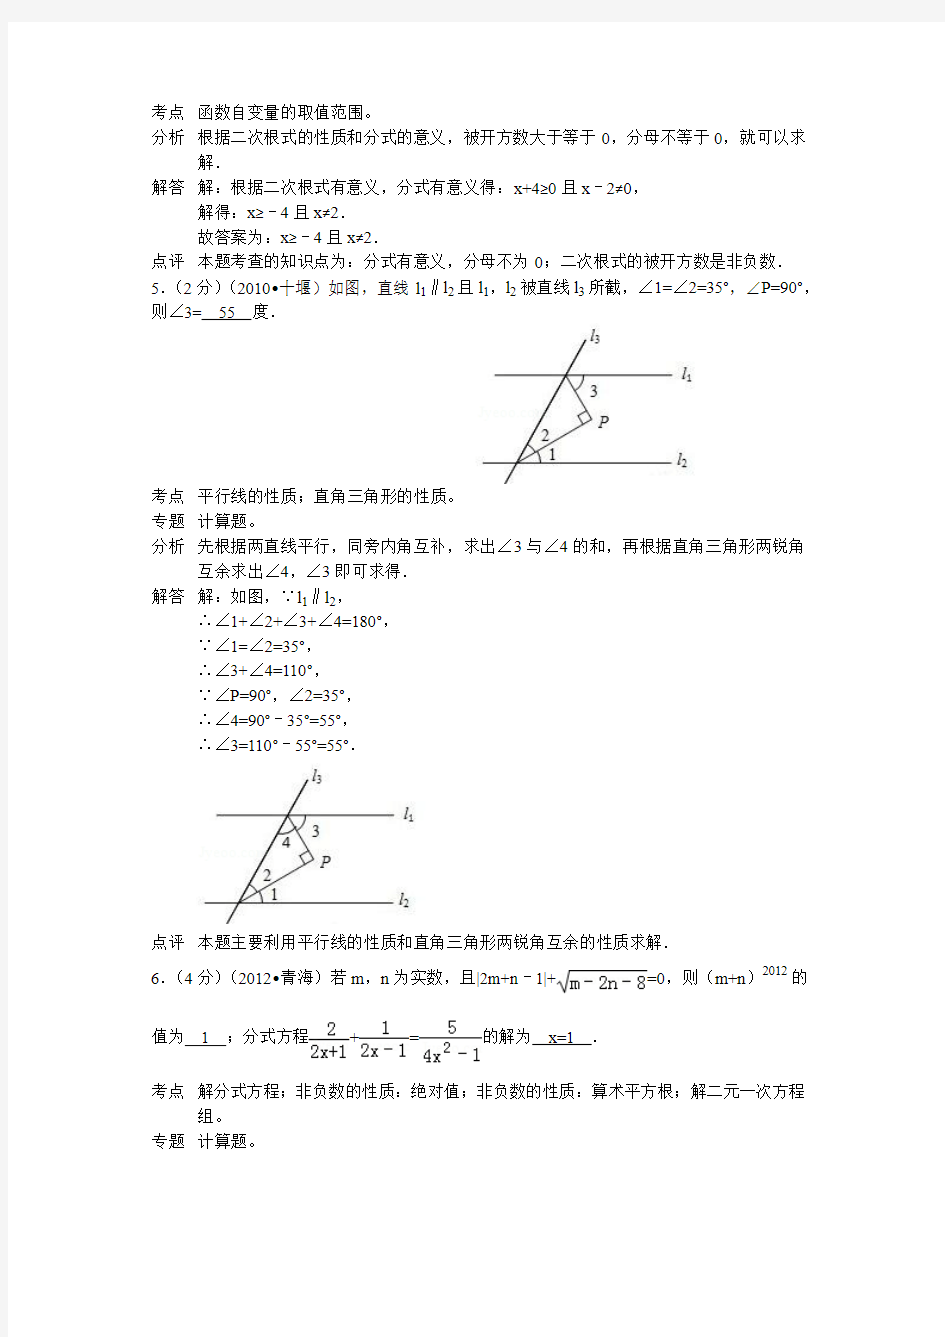 2012年初中毕业与升学统一考试数学试卷(青海省)(详细解析)